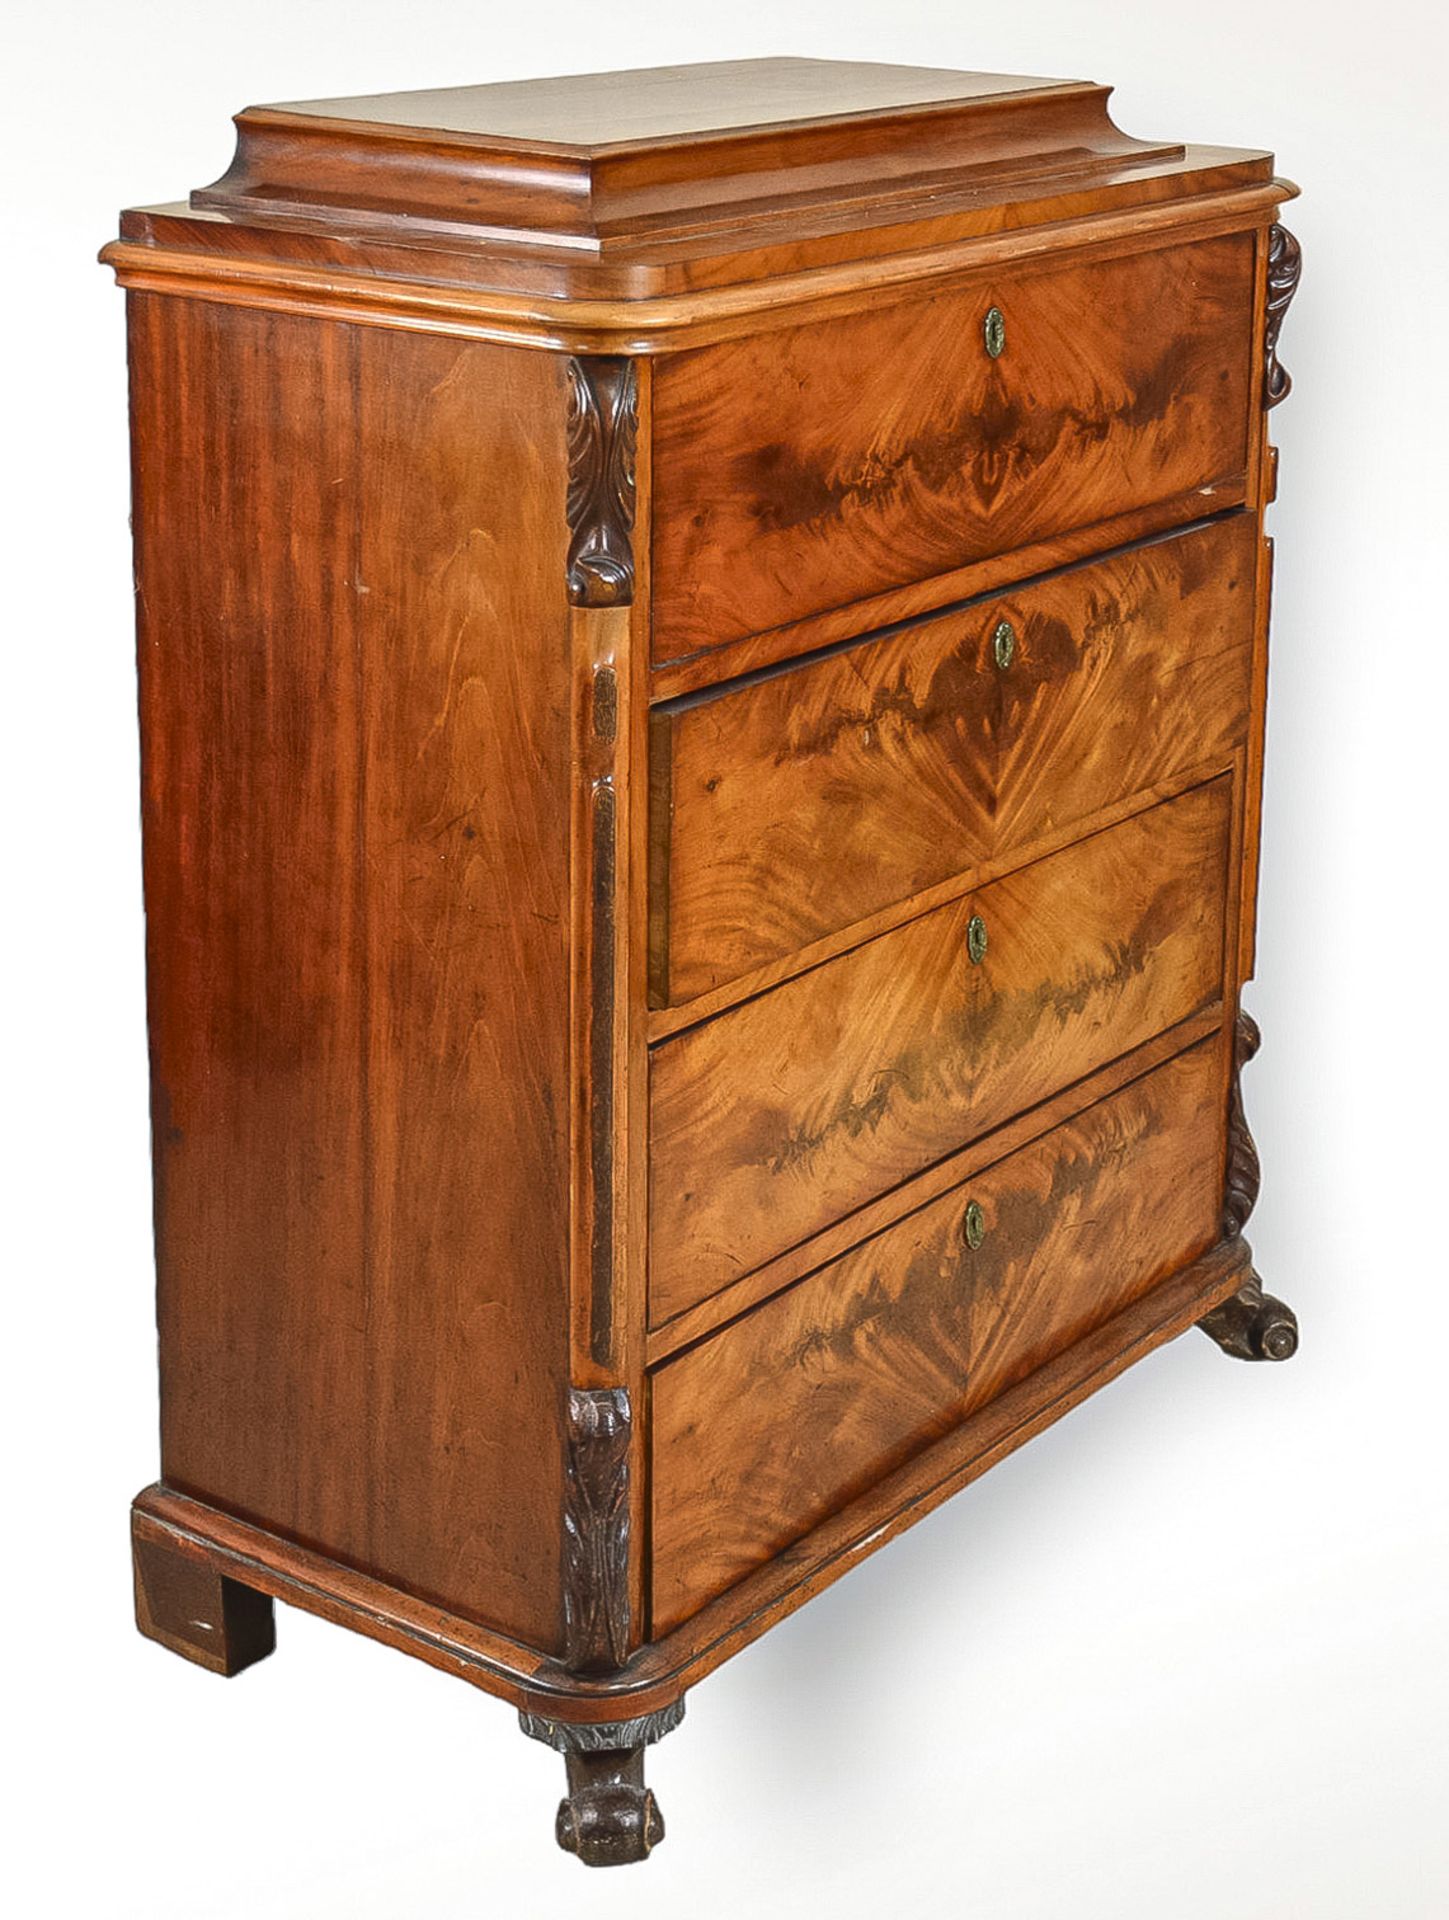 North German high chest of drawers in Biedermeier style, mahogany veneer, key enclosed, signs of - Image 3 of 3